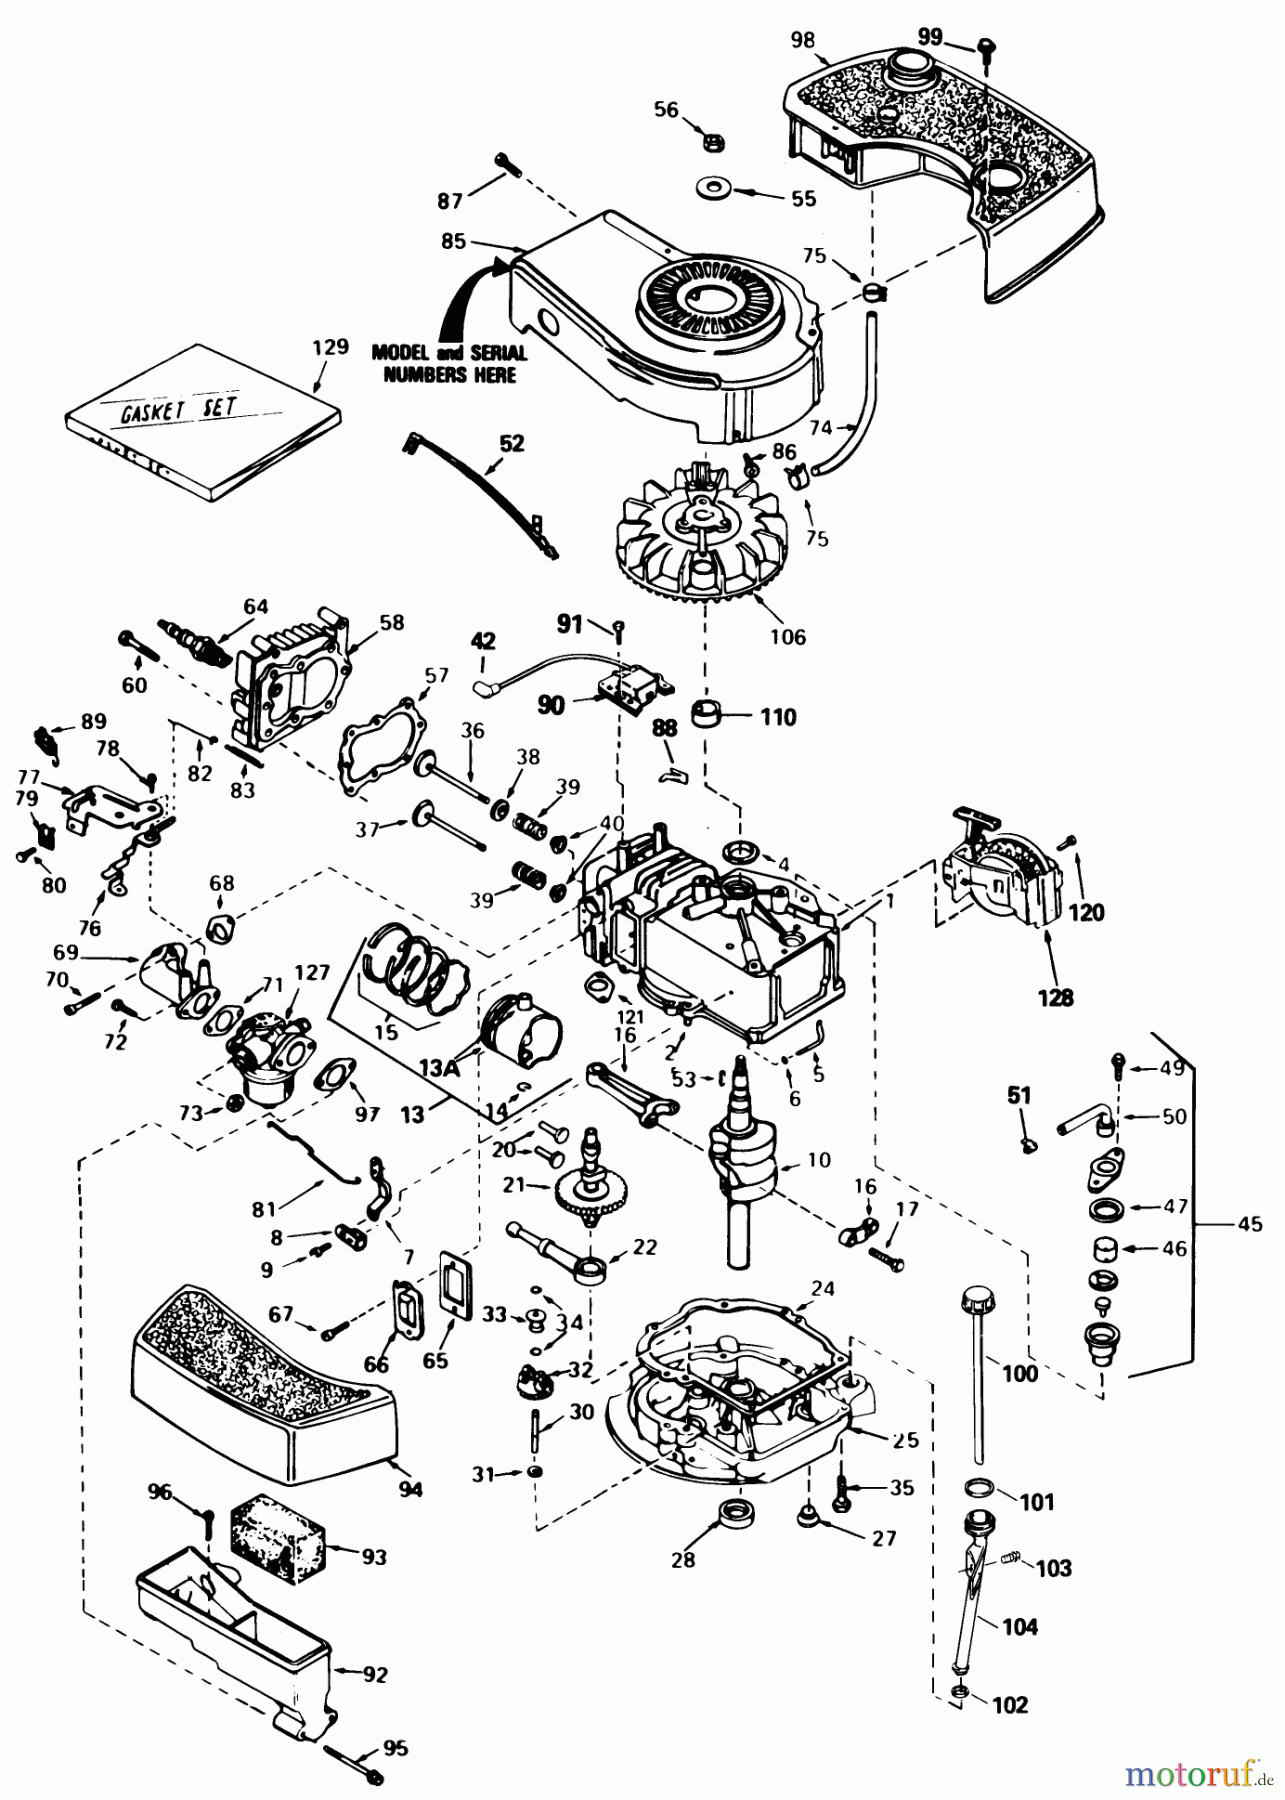  Toro Neu Mowers, Walk-Behind Seite 1 16299C - Toro Lawnmower, 1988 (8000001-8999999) ENGINE TECUMSEH MODEL NO. TNT 100-10100F